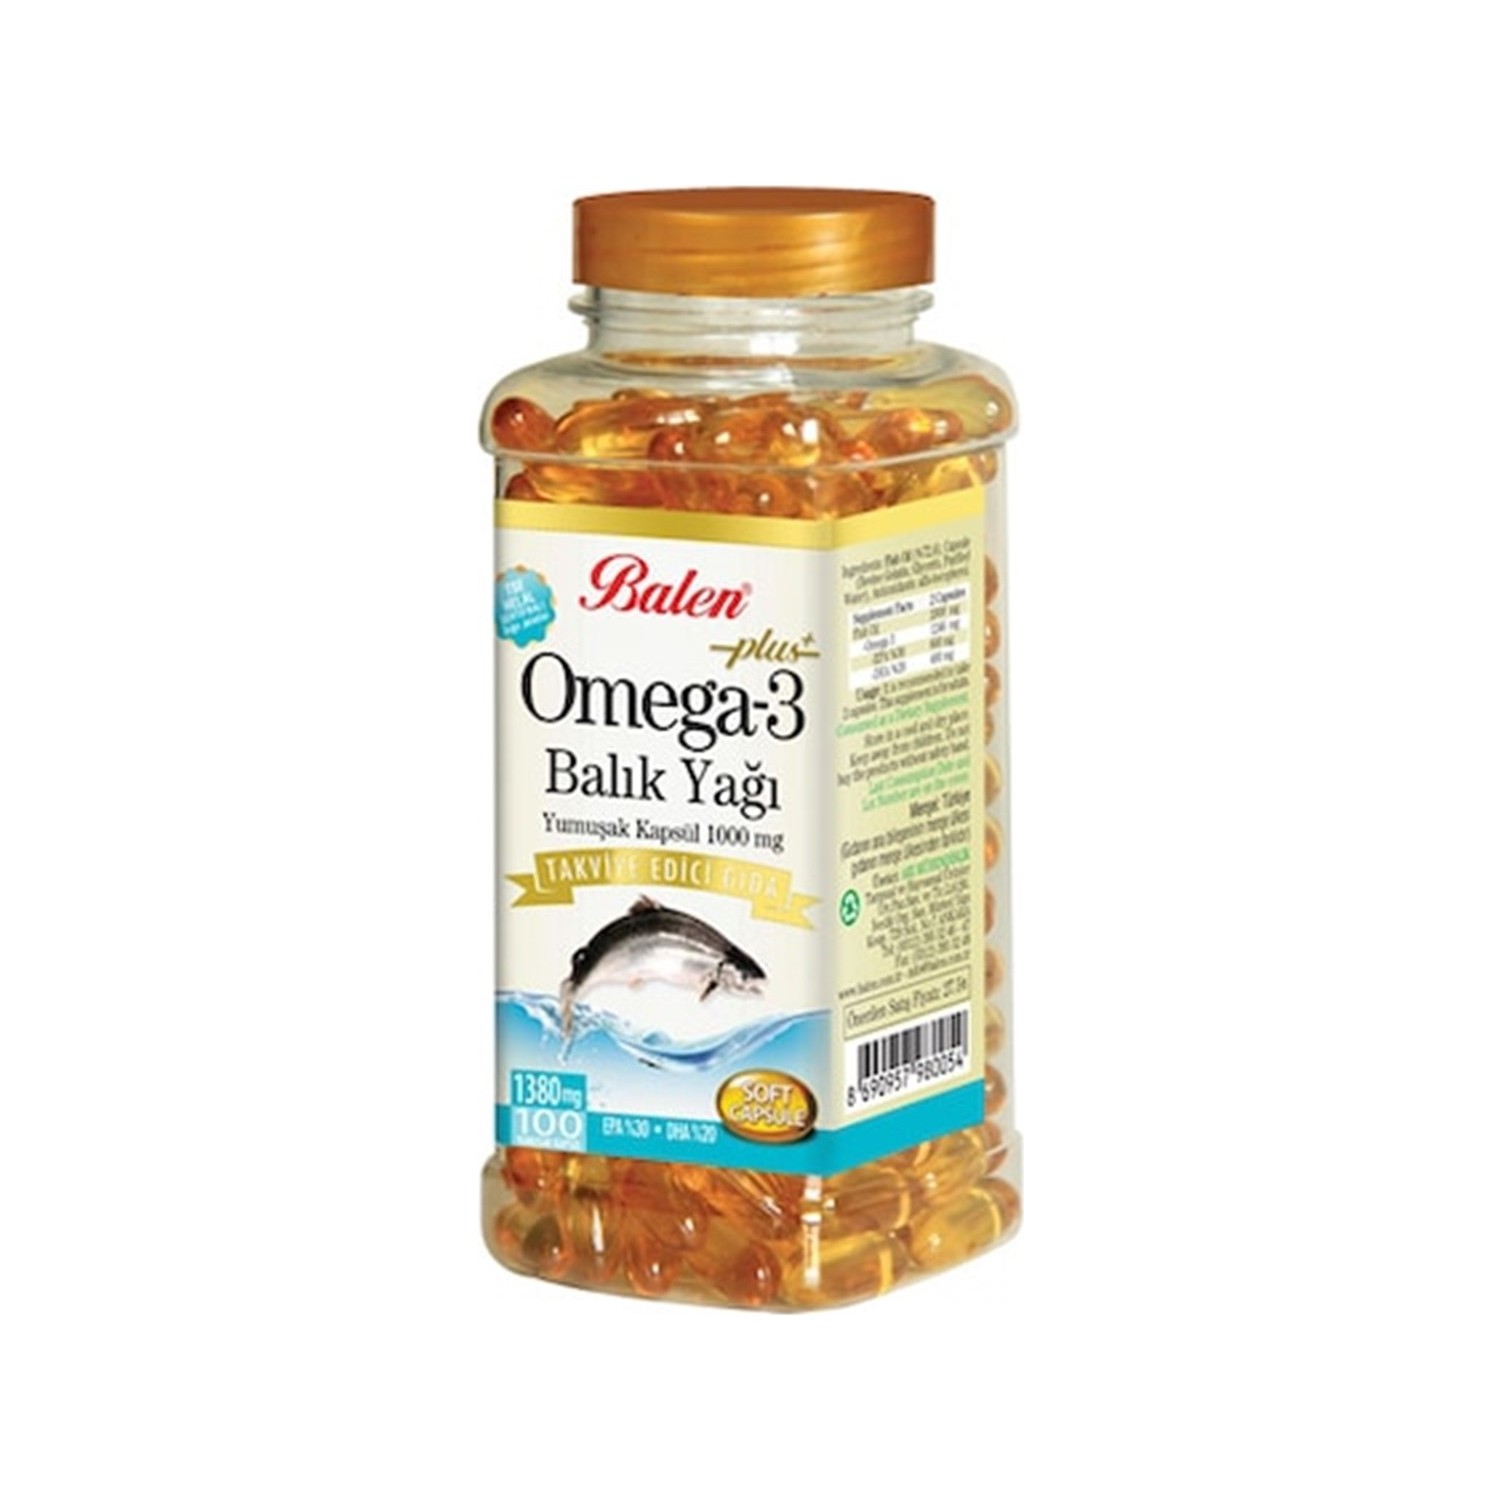 Рыбий жир Balen Omega 3, 1380 мг, 100 капсул ready pet go omega health chews поддержка кожи и шерсти для собак всех возрастов рыбий жир сыр 90 мягких жевательных таблеток